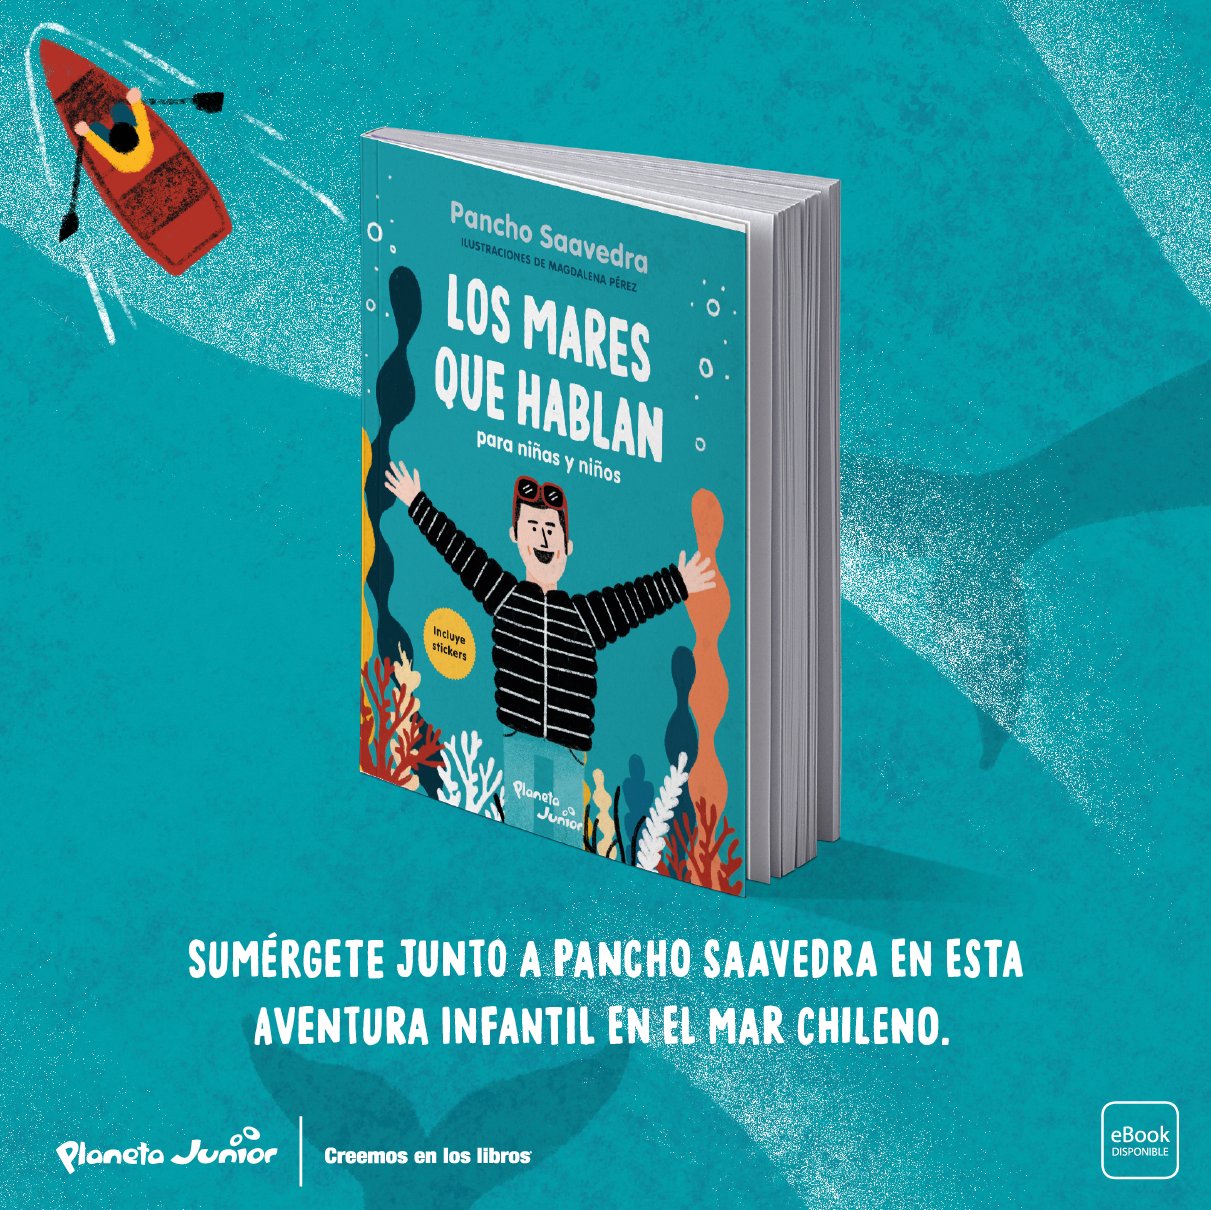 Planeta de Libros Chile on X: Descubre un libro que te inspirará